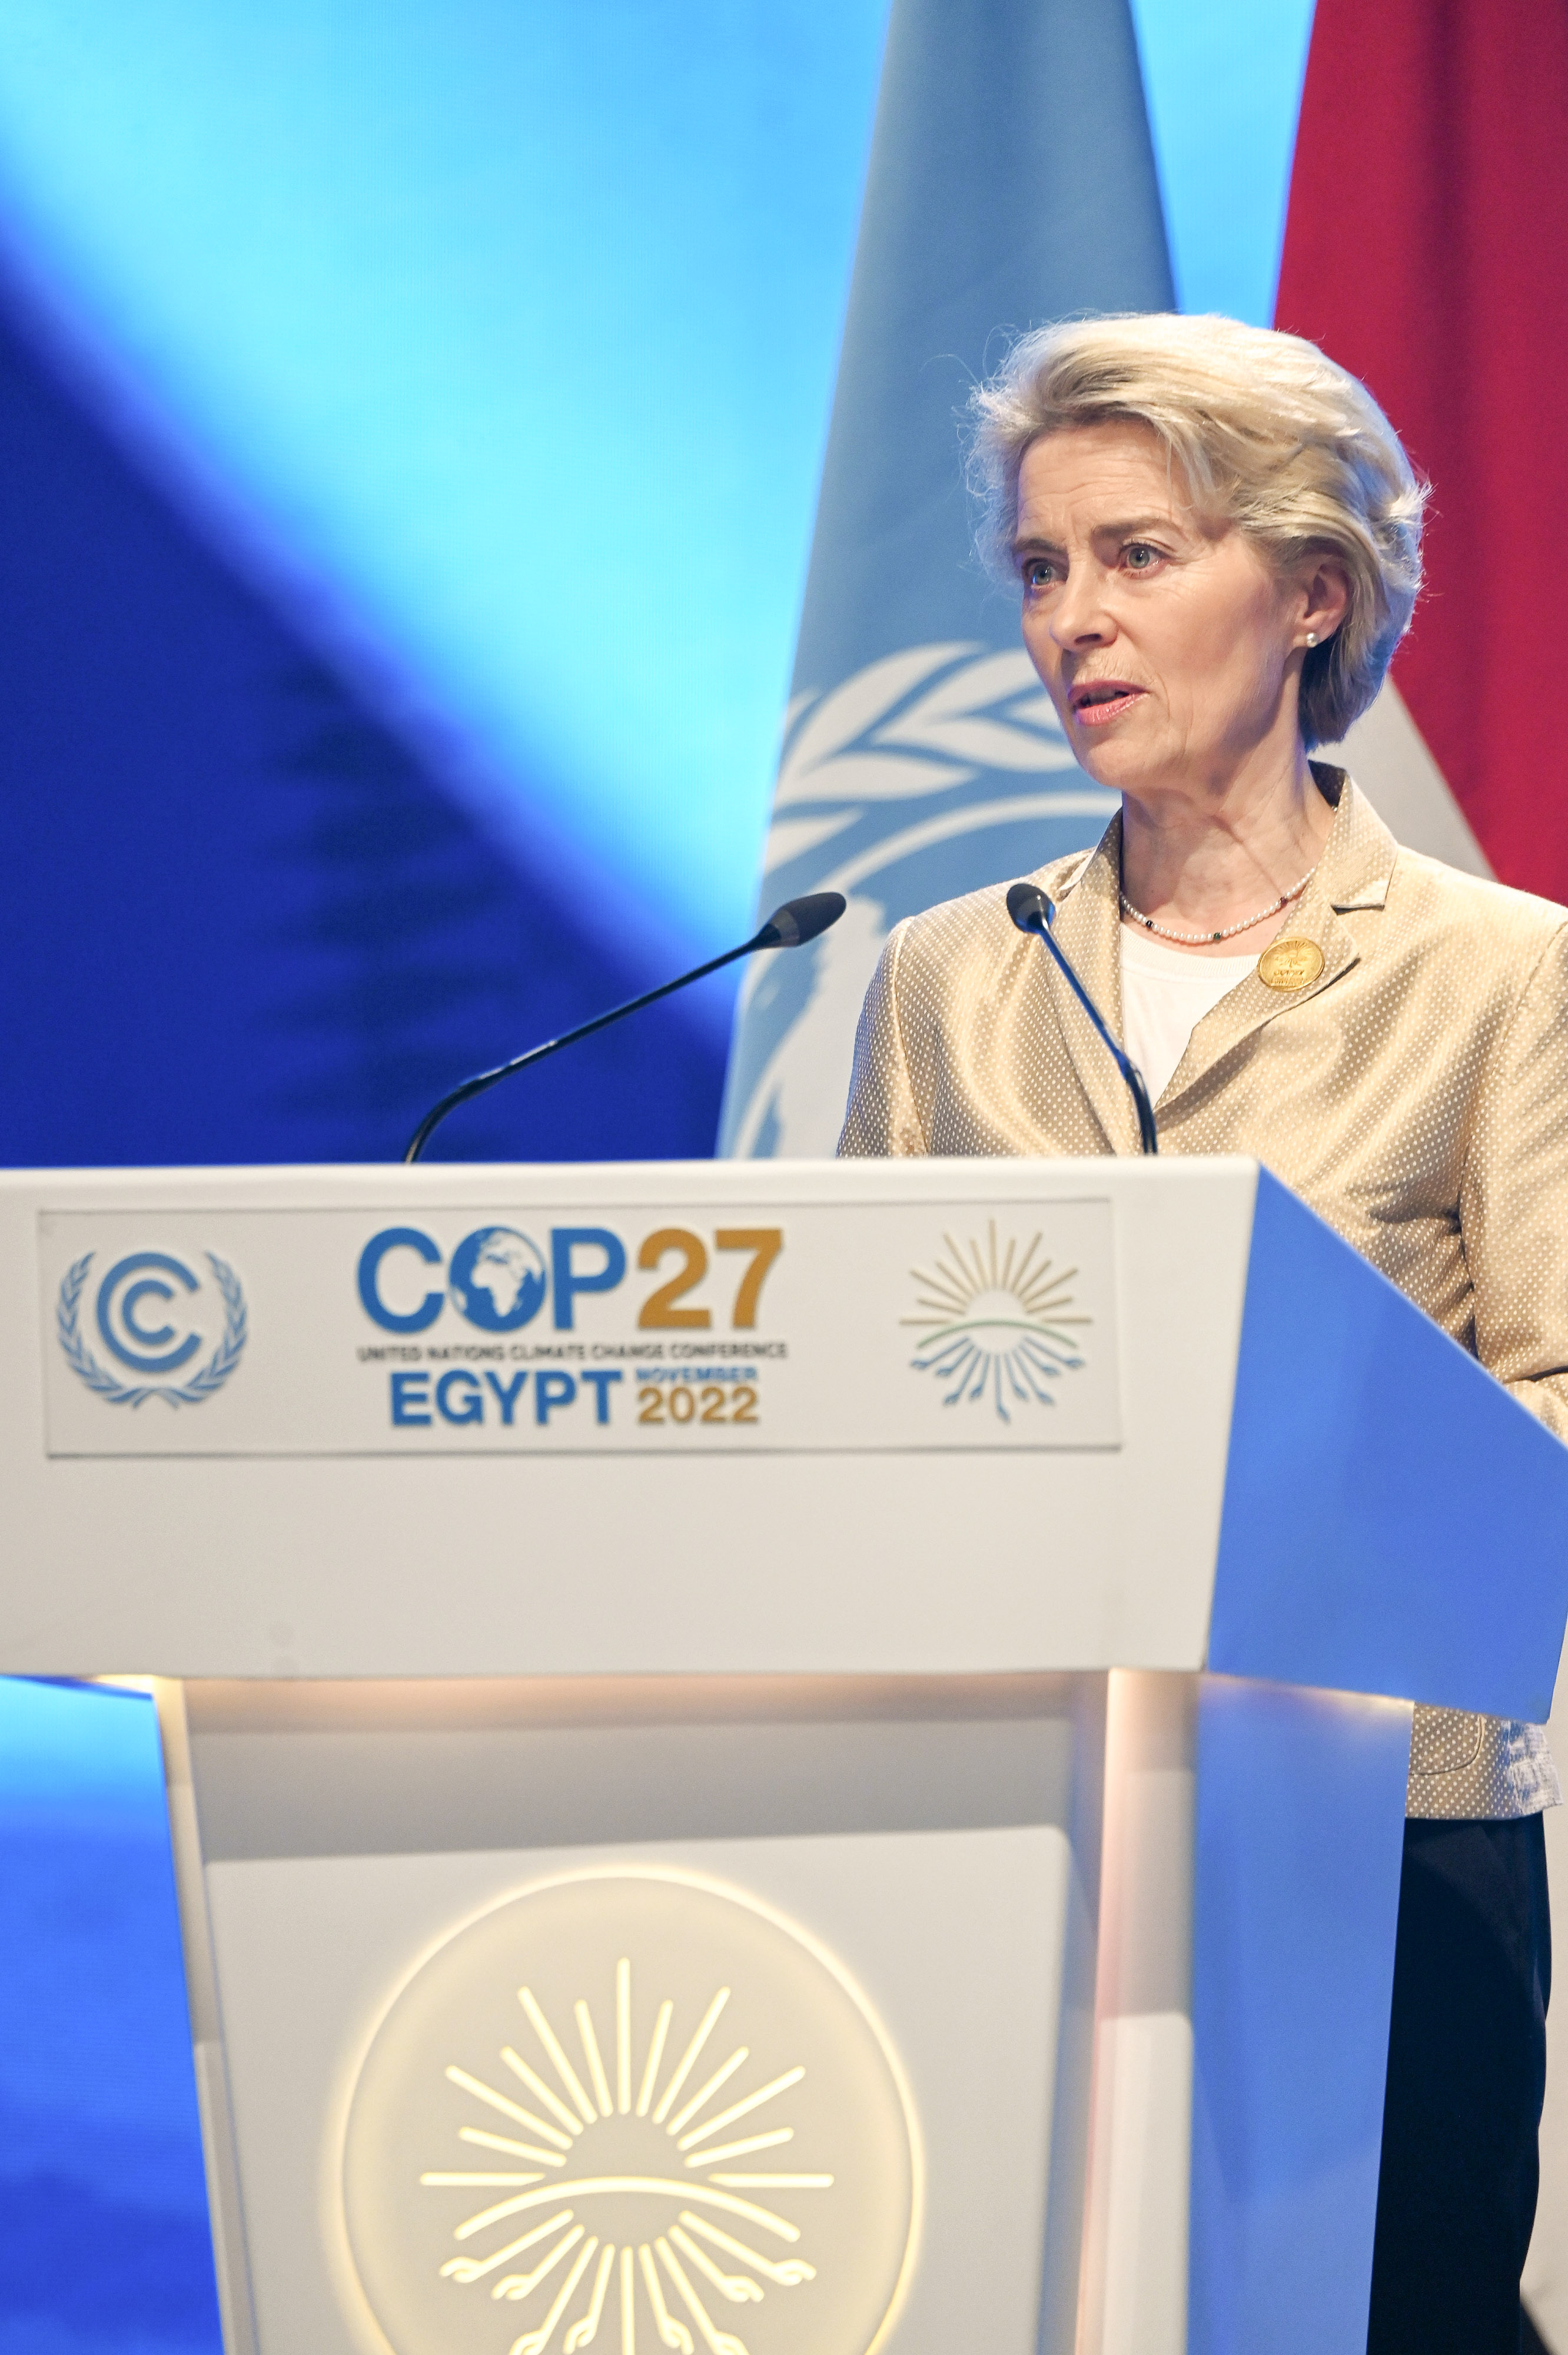 COP27 plenary meeting: European Commission President Ursula von der Leyen at the podium